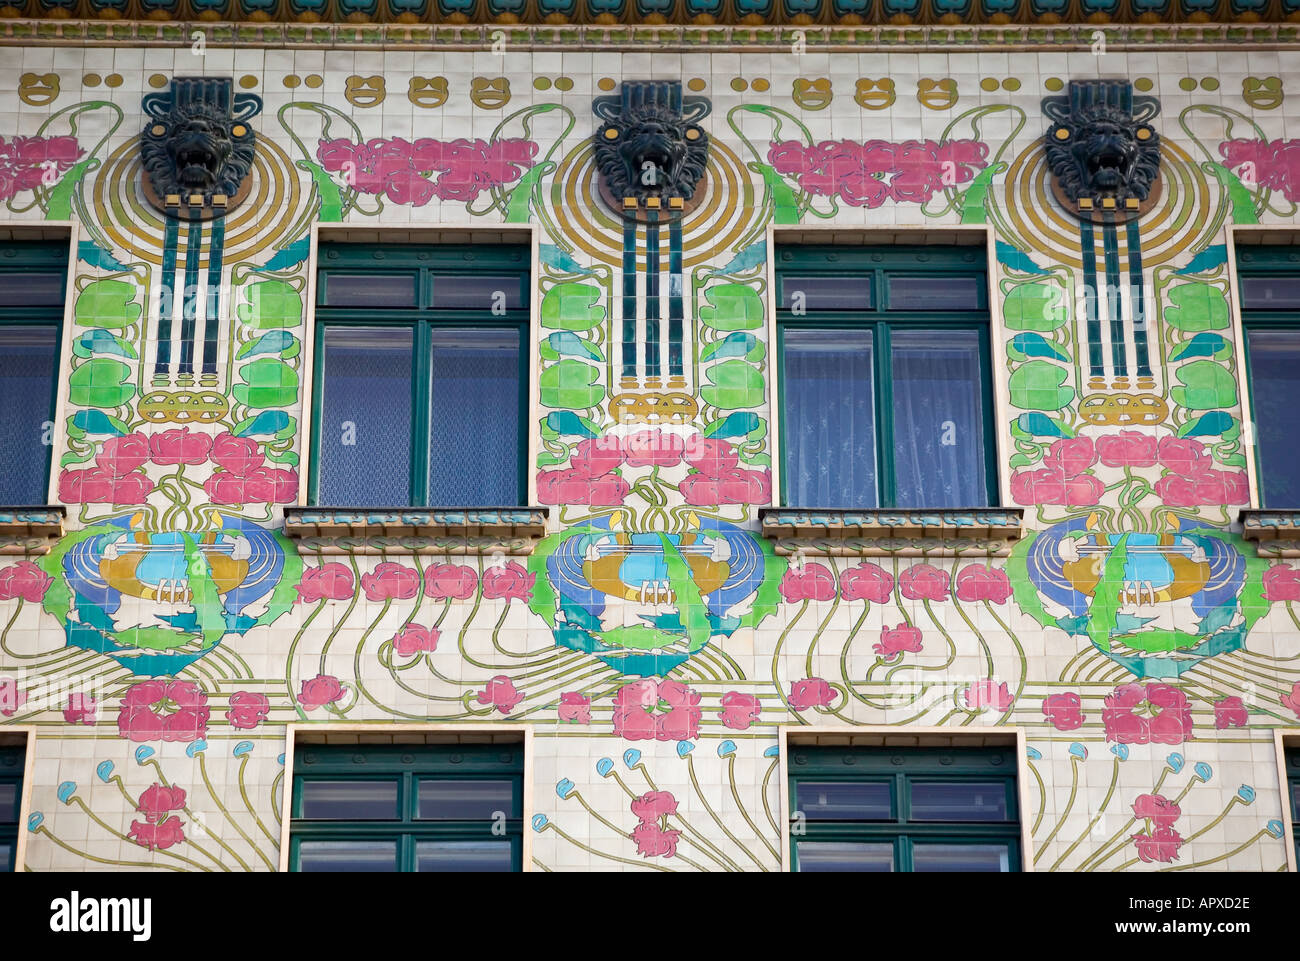 Jugendstil Building, Majolikahaus, Vienna, Austria Stock Photo